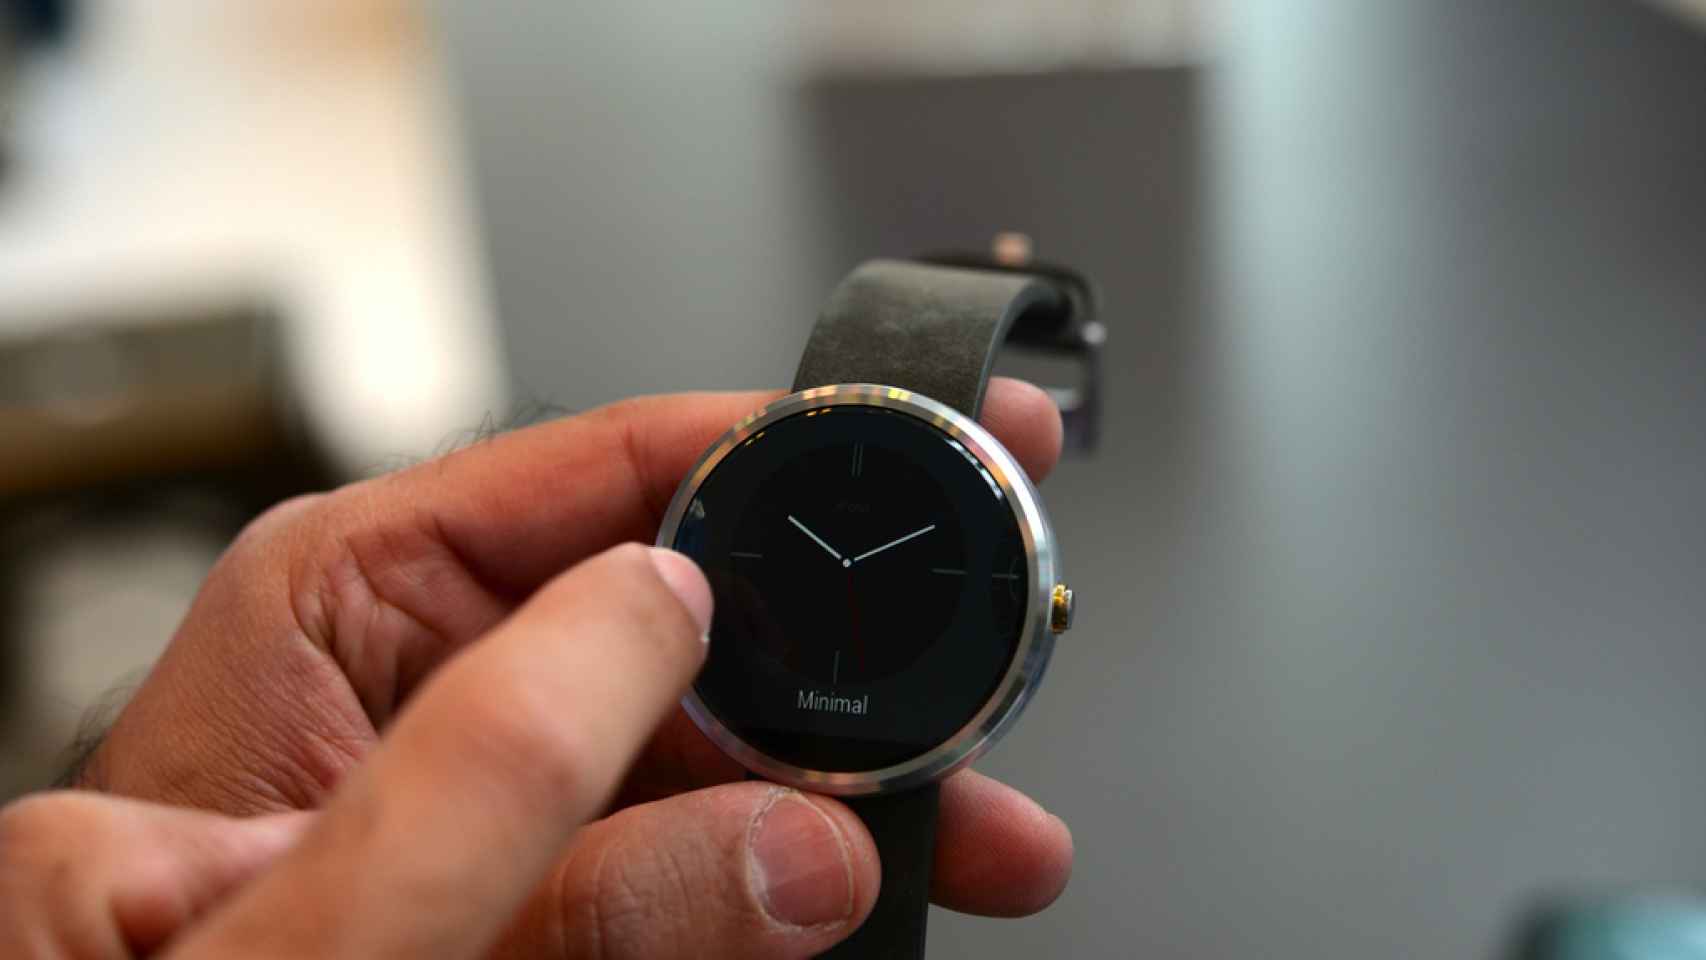 Comparamos los tres smartwatch con Android Wear: Gear Live, G Watch y Moto 360